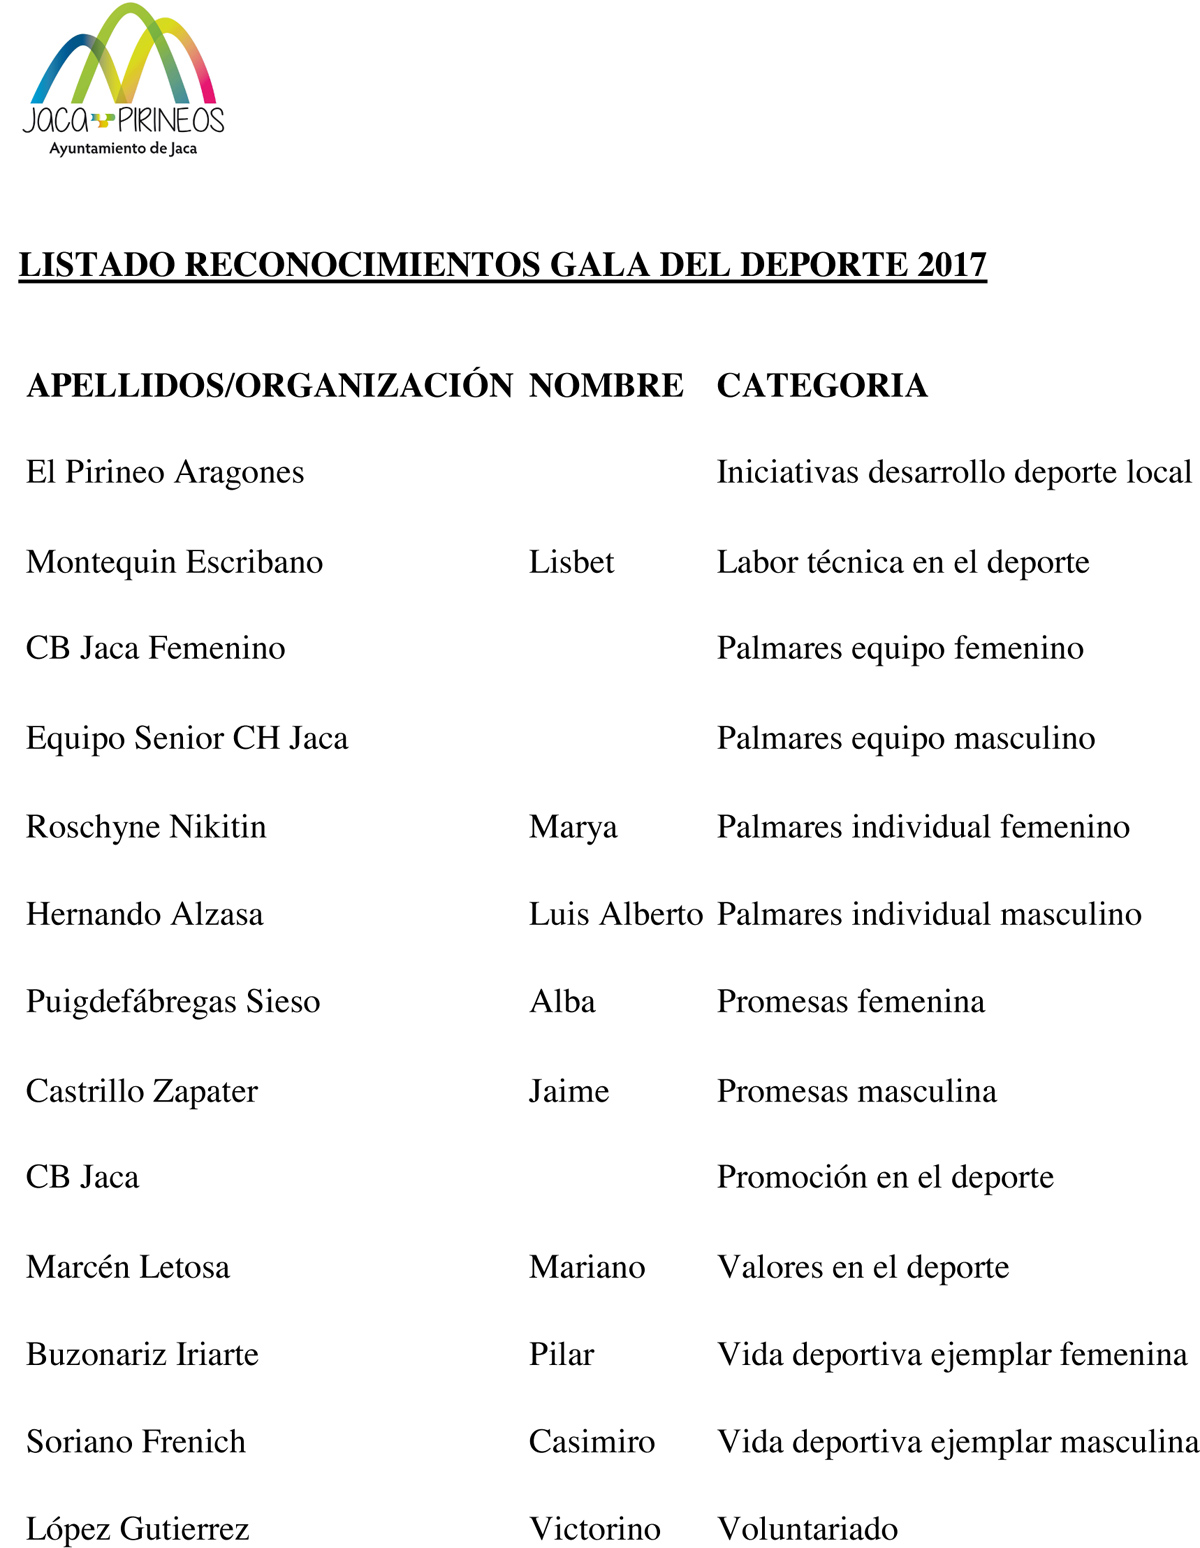 Listado reconocimientos Gala del Deporte 2017